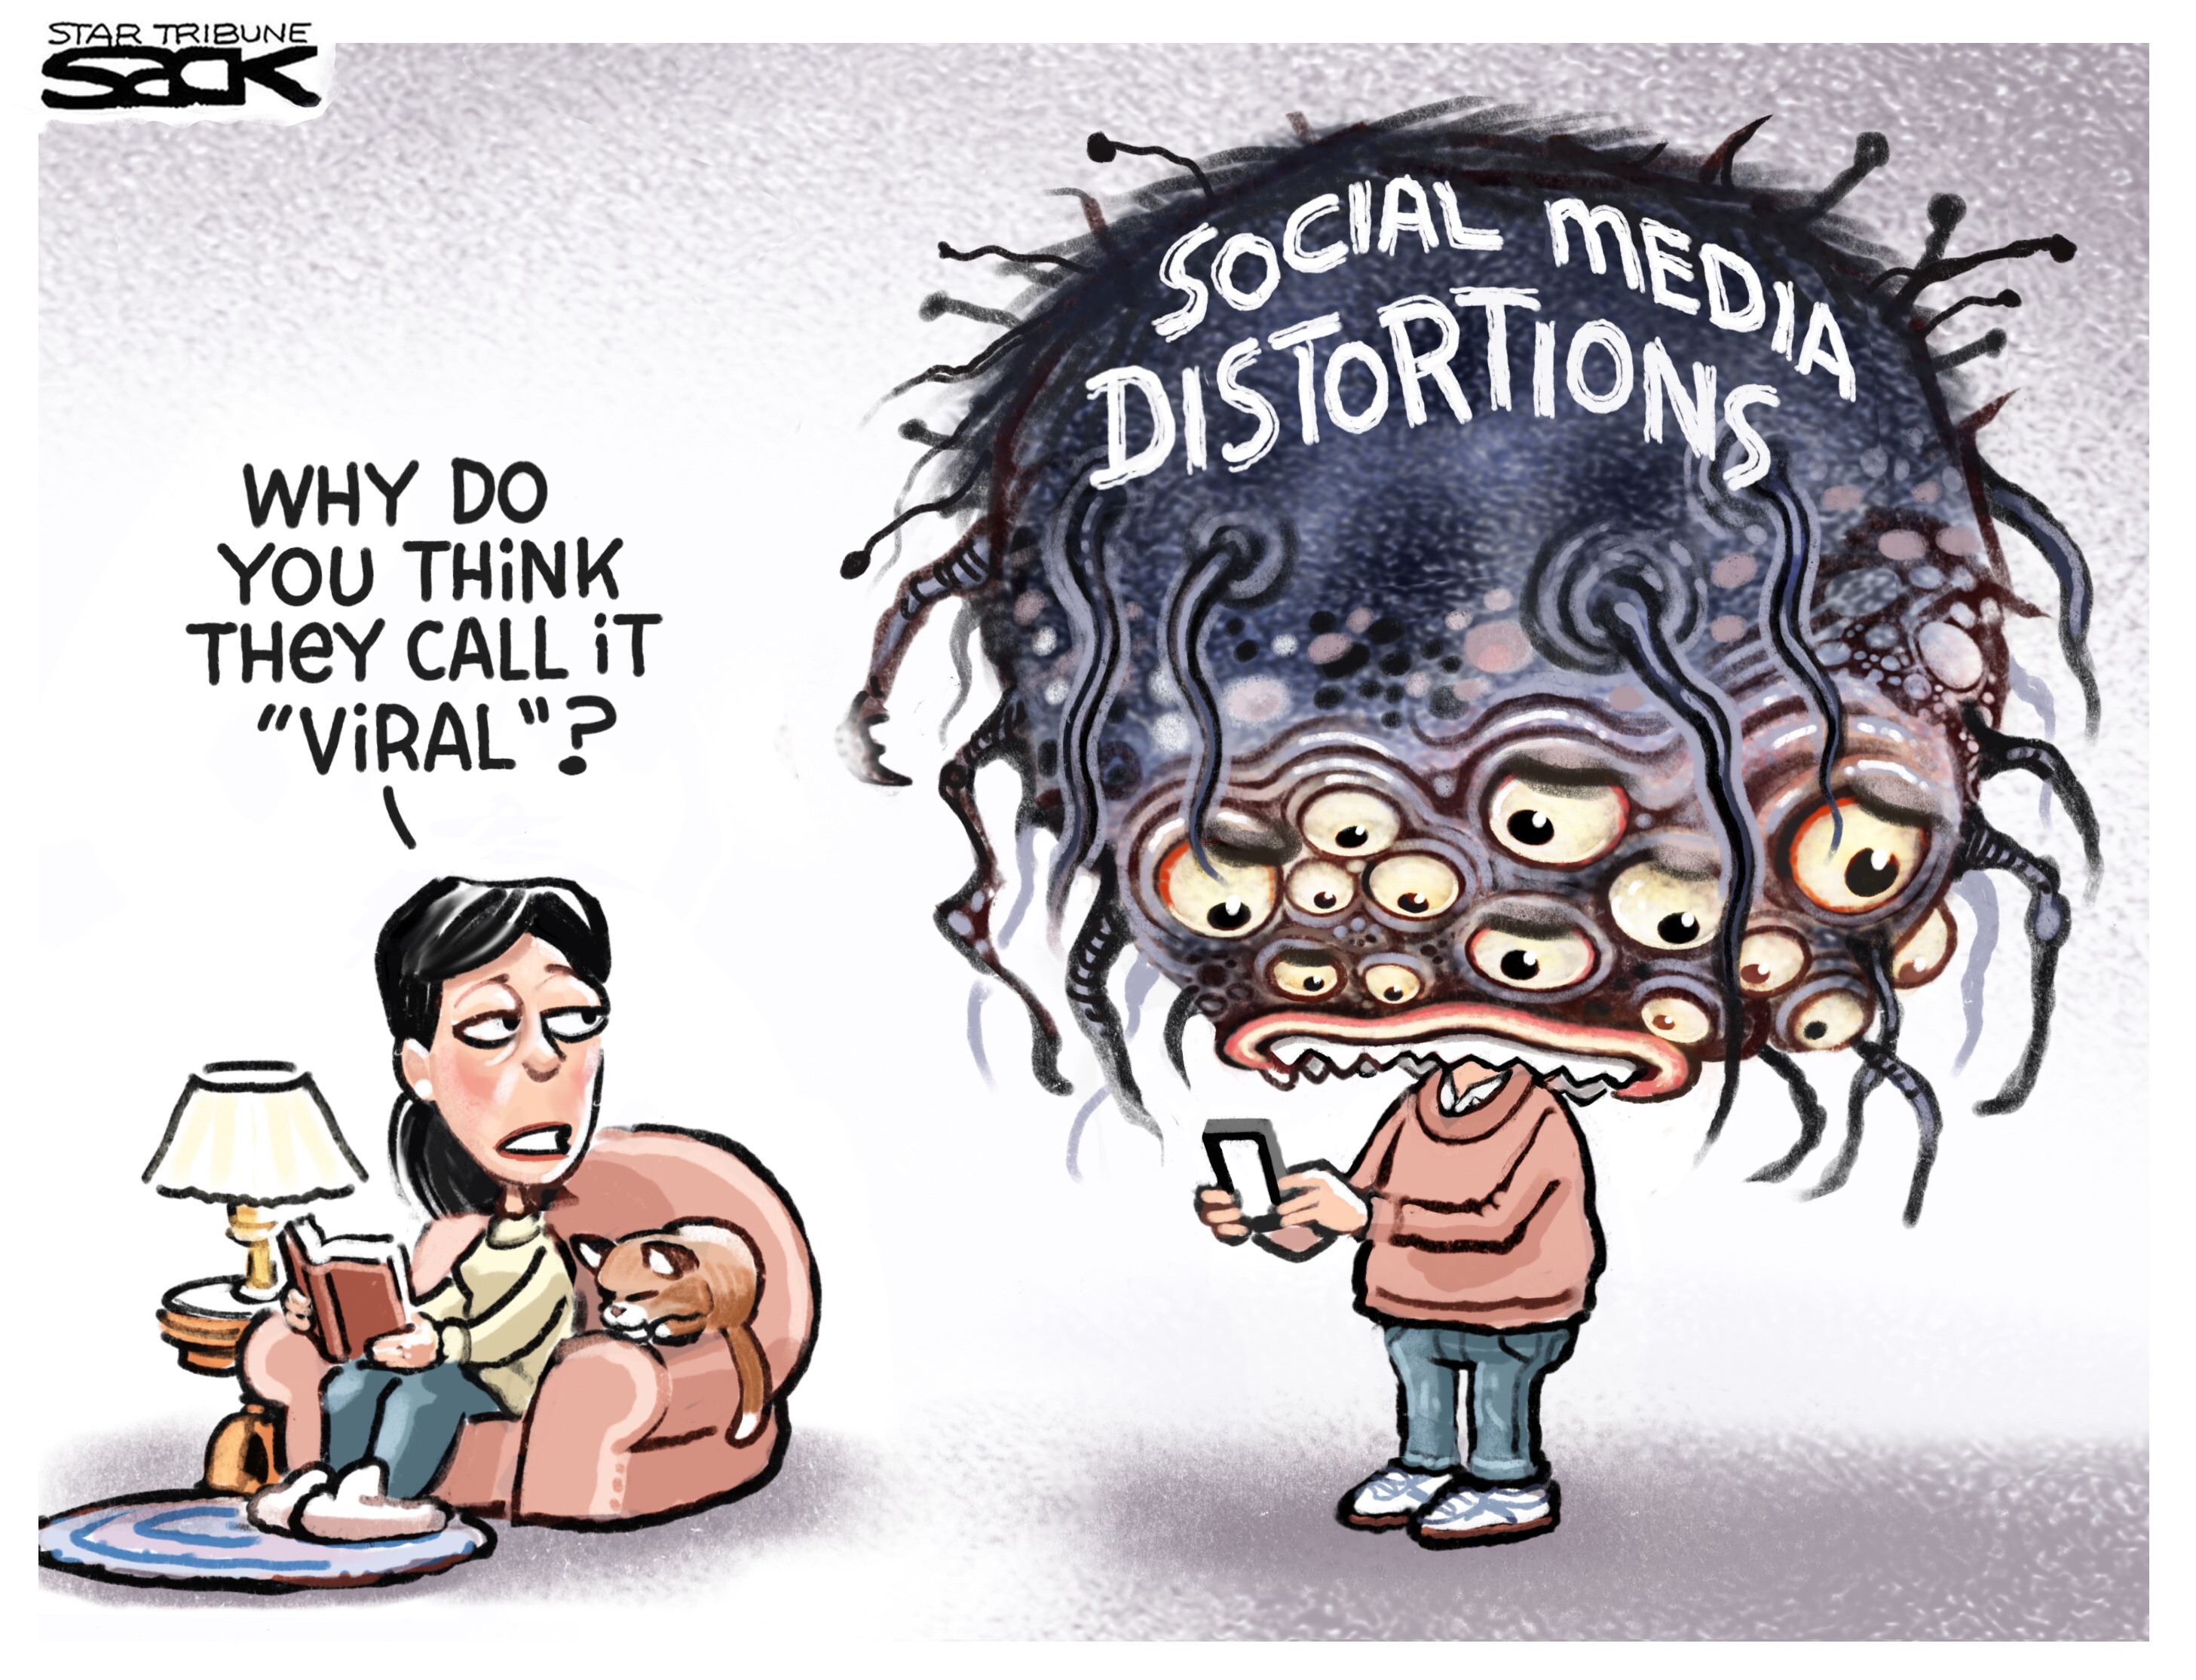 Editorial cartoon . viral social media distortions